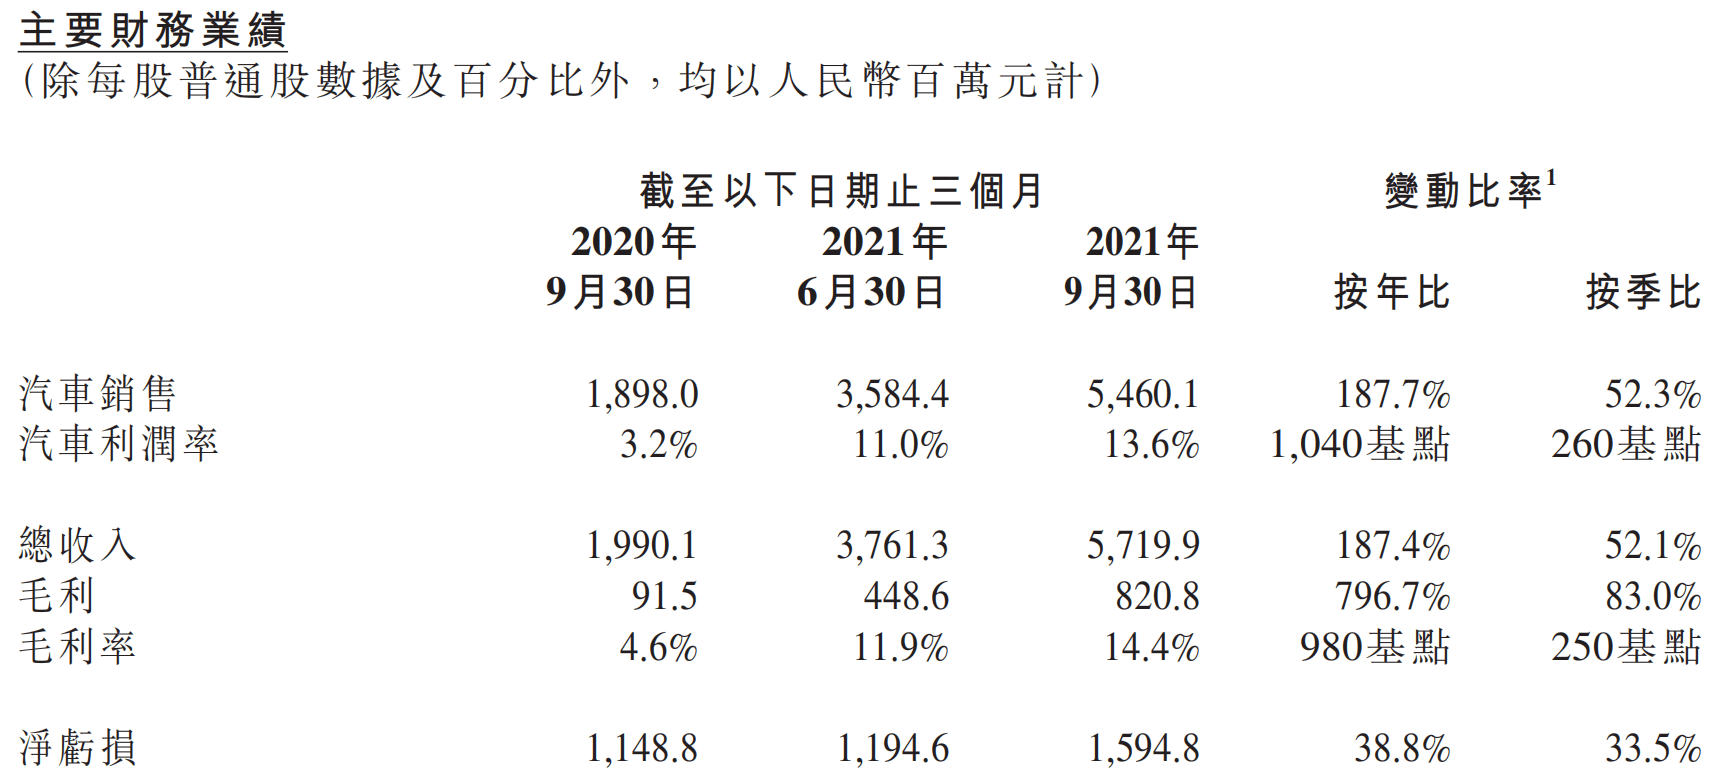 小鹏汽车第三季度交付量创新高 期内营收57.2亿元同比增长184.4%